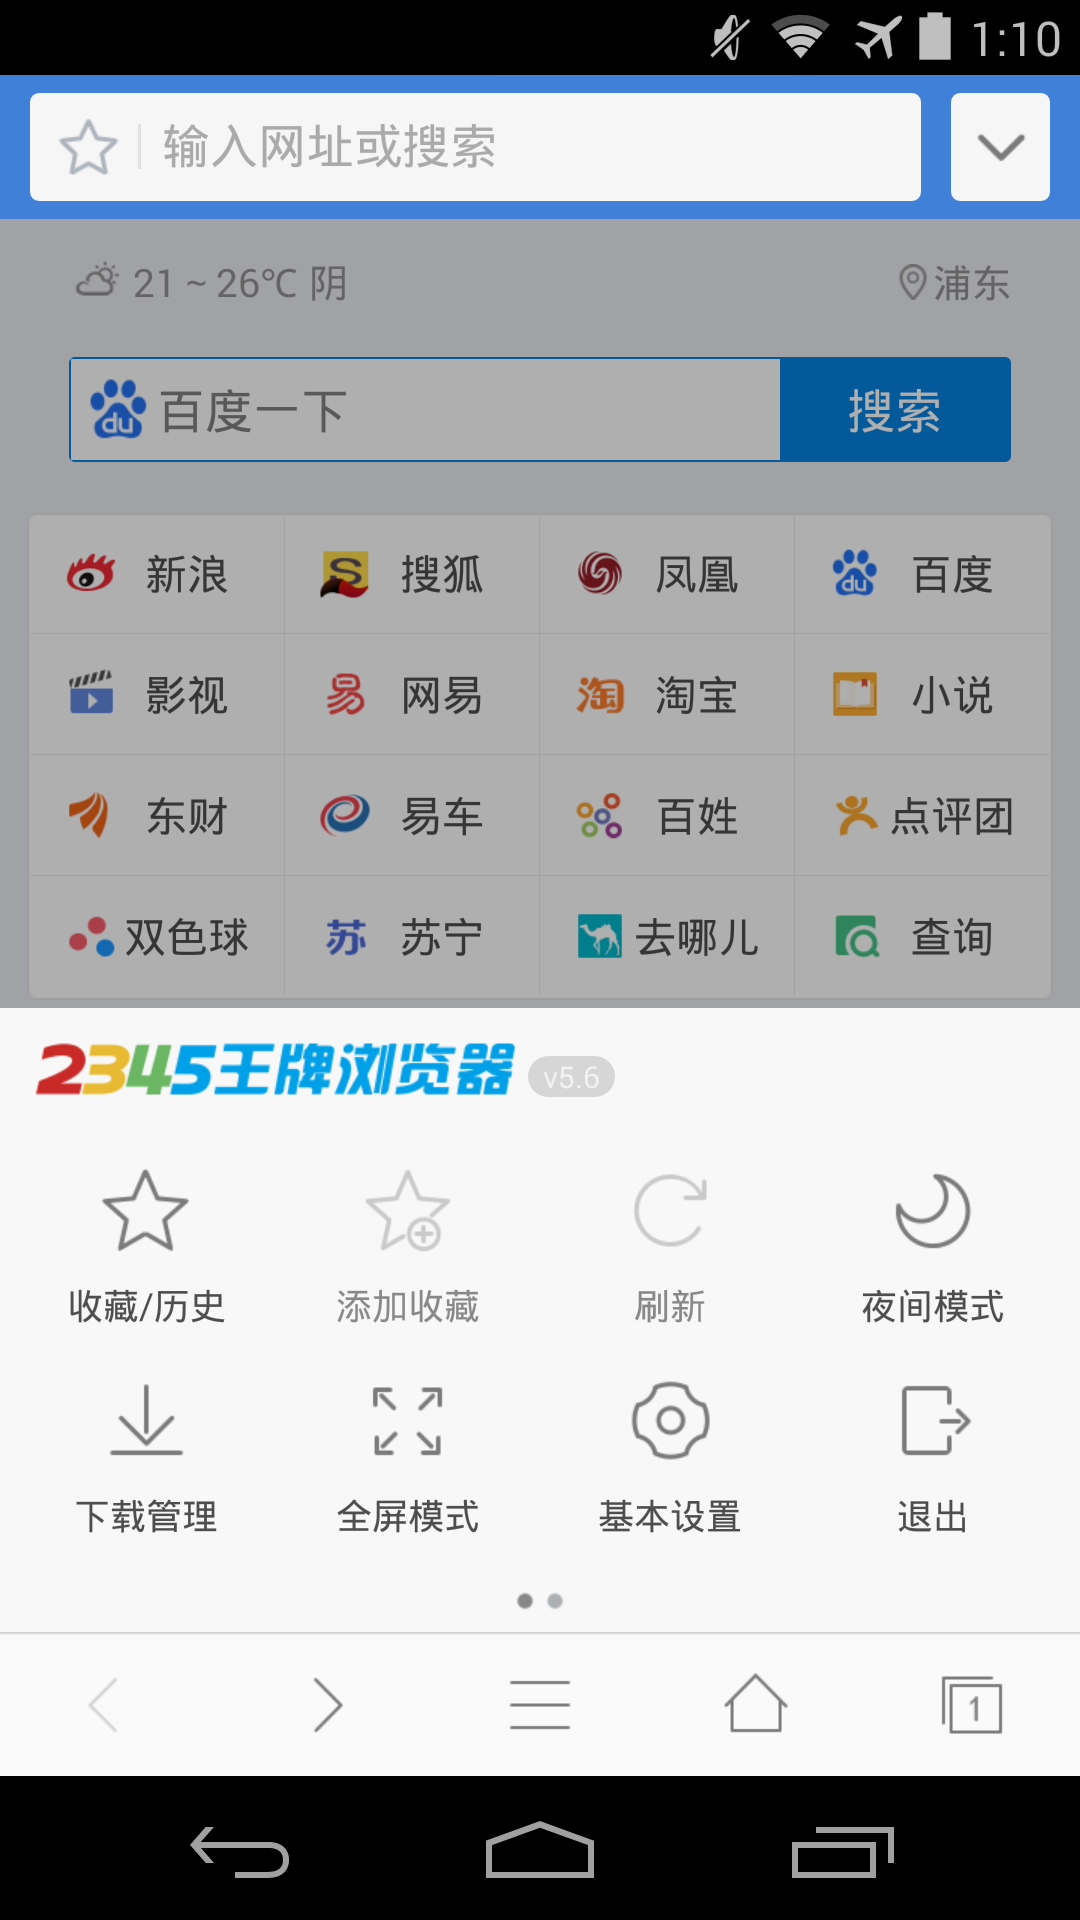 网站建设_建设b2b网站要求_广州开发区建设和环境保护局网站